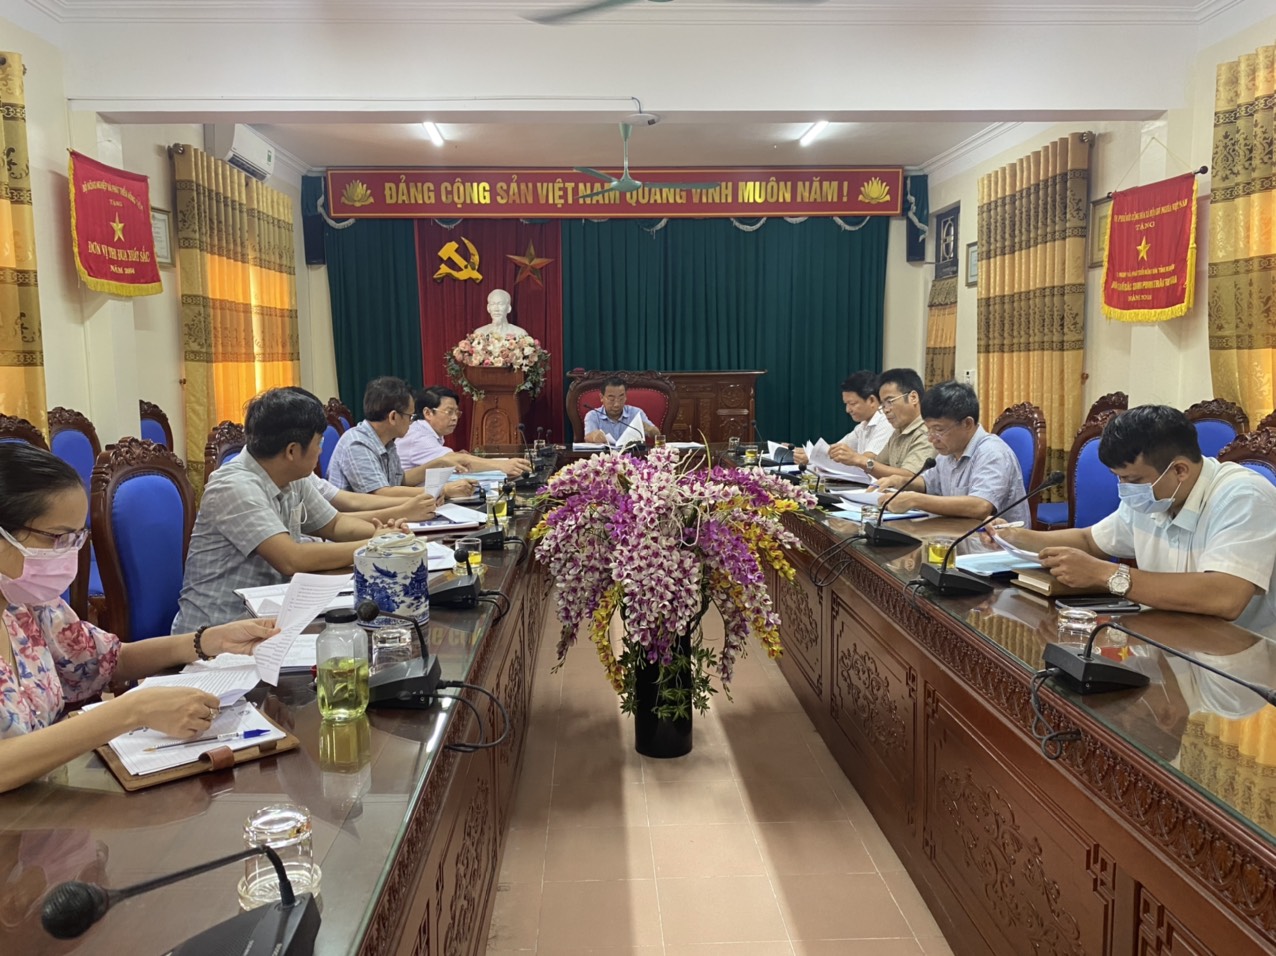 Kết quả thực hiện công tác quản lý nhà nước về chất lượng vật tư nông nghiệp, an toàn thực phẩm nông lâm thủy sản 6 tháng đầu năm 2021  của ngành Nông nghiệp và PTNT trên địa bàn tỉnh Nghệ An